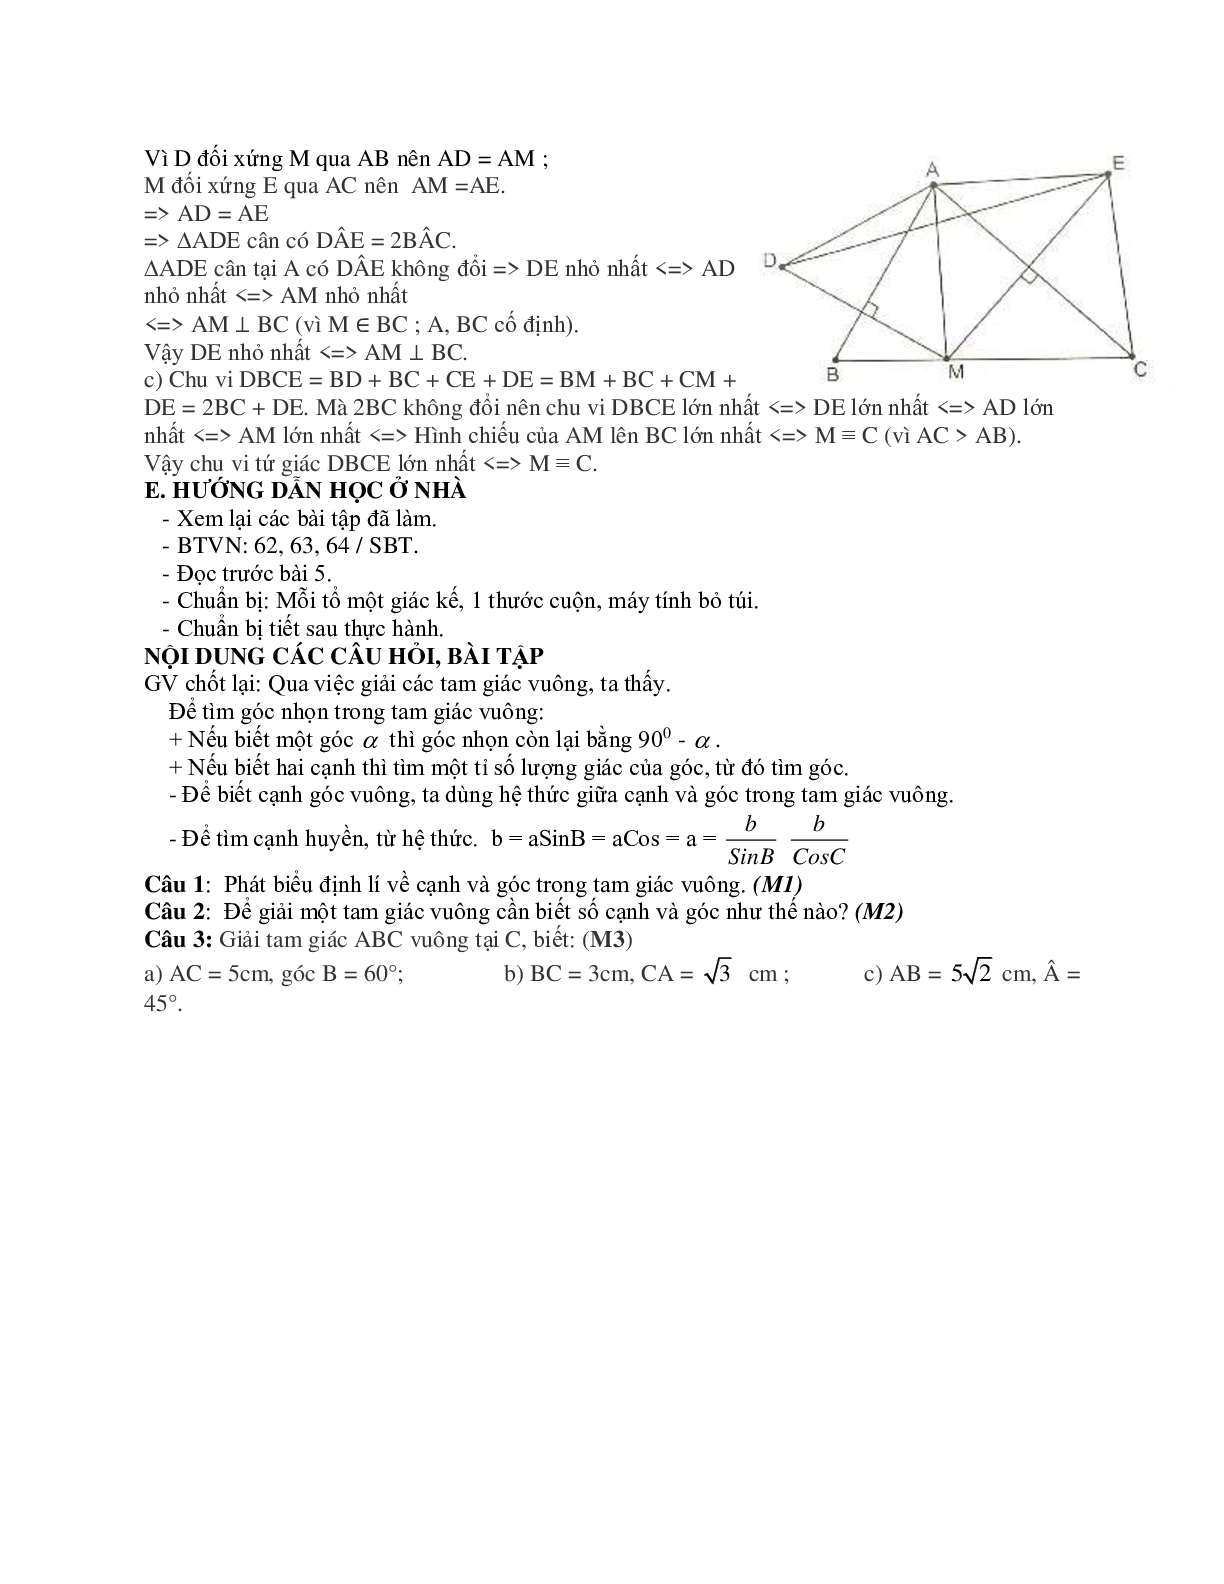 Giáo án Hình học 9 chương 1 bài 4: Một số hệ thức về cạnh và góc trong tam giác vuông mới nhất (trang 9)